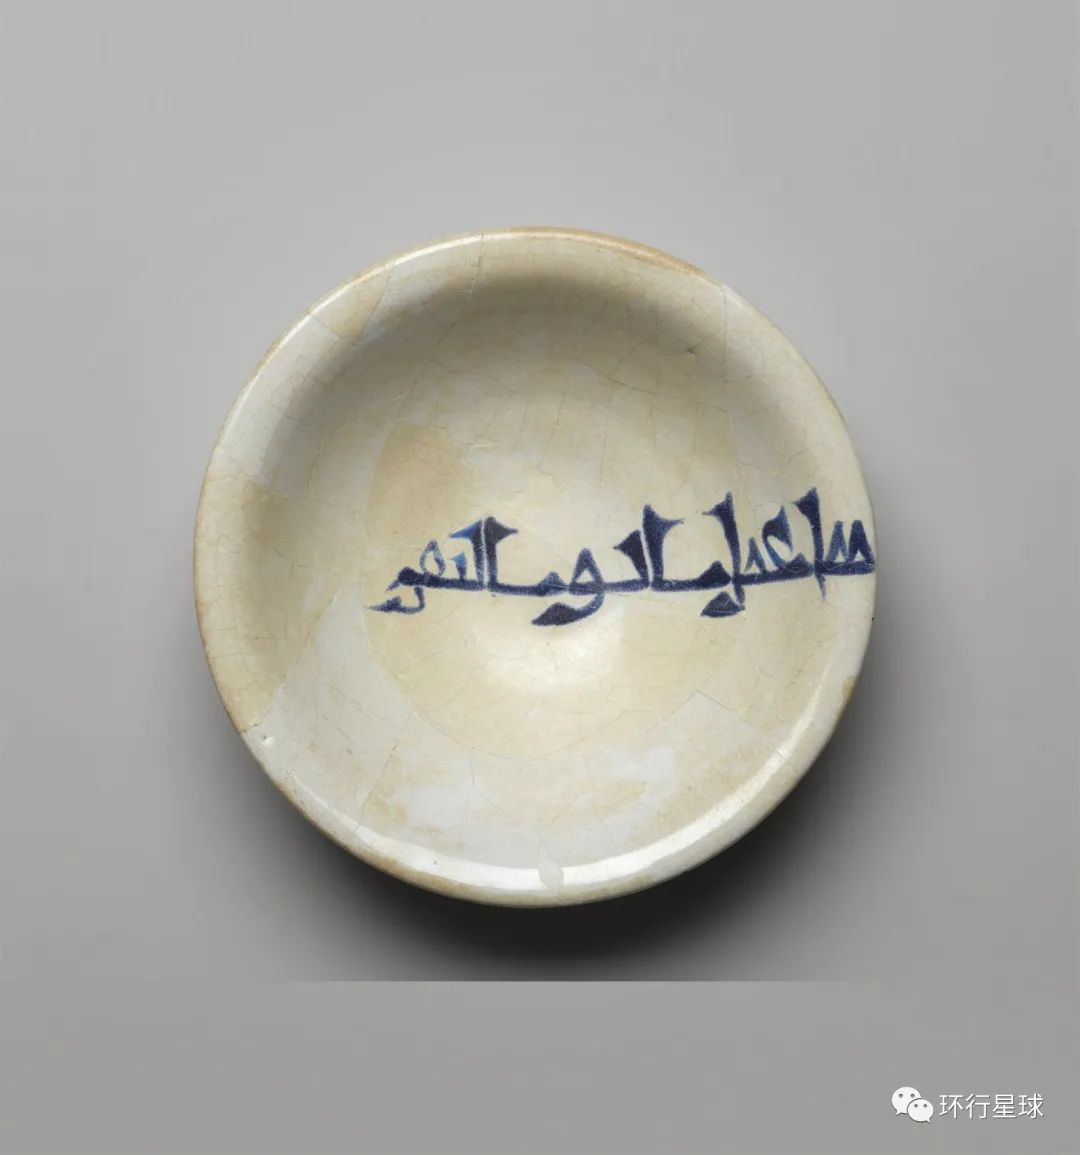 中国陶瓷自唐朝以来就在中东大受欢迎,而在宋朝,中国瓷器已经作为商品